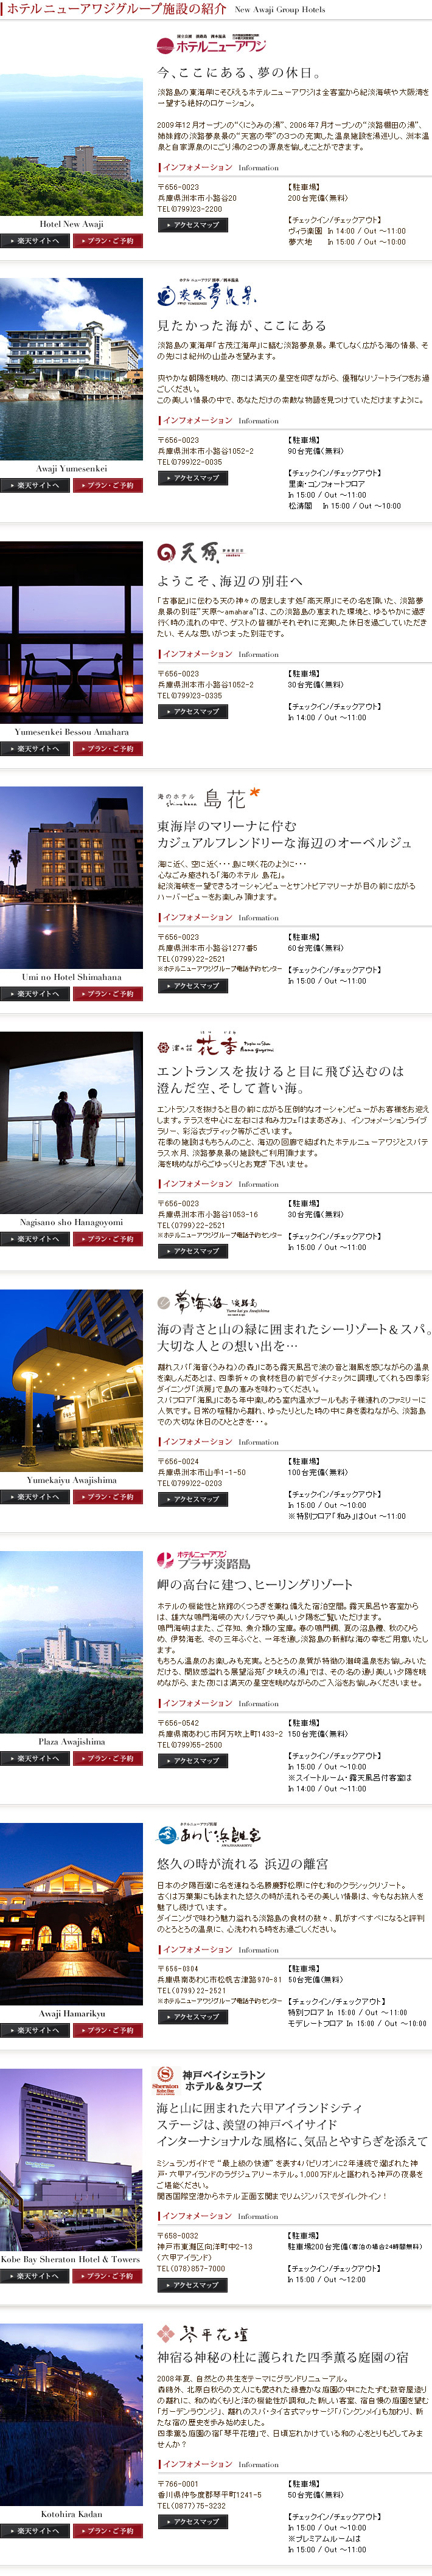 ホテルニューアワジグループ施設の紹介 New Awaji Group Hotels